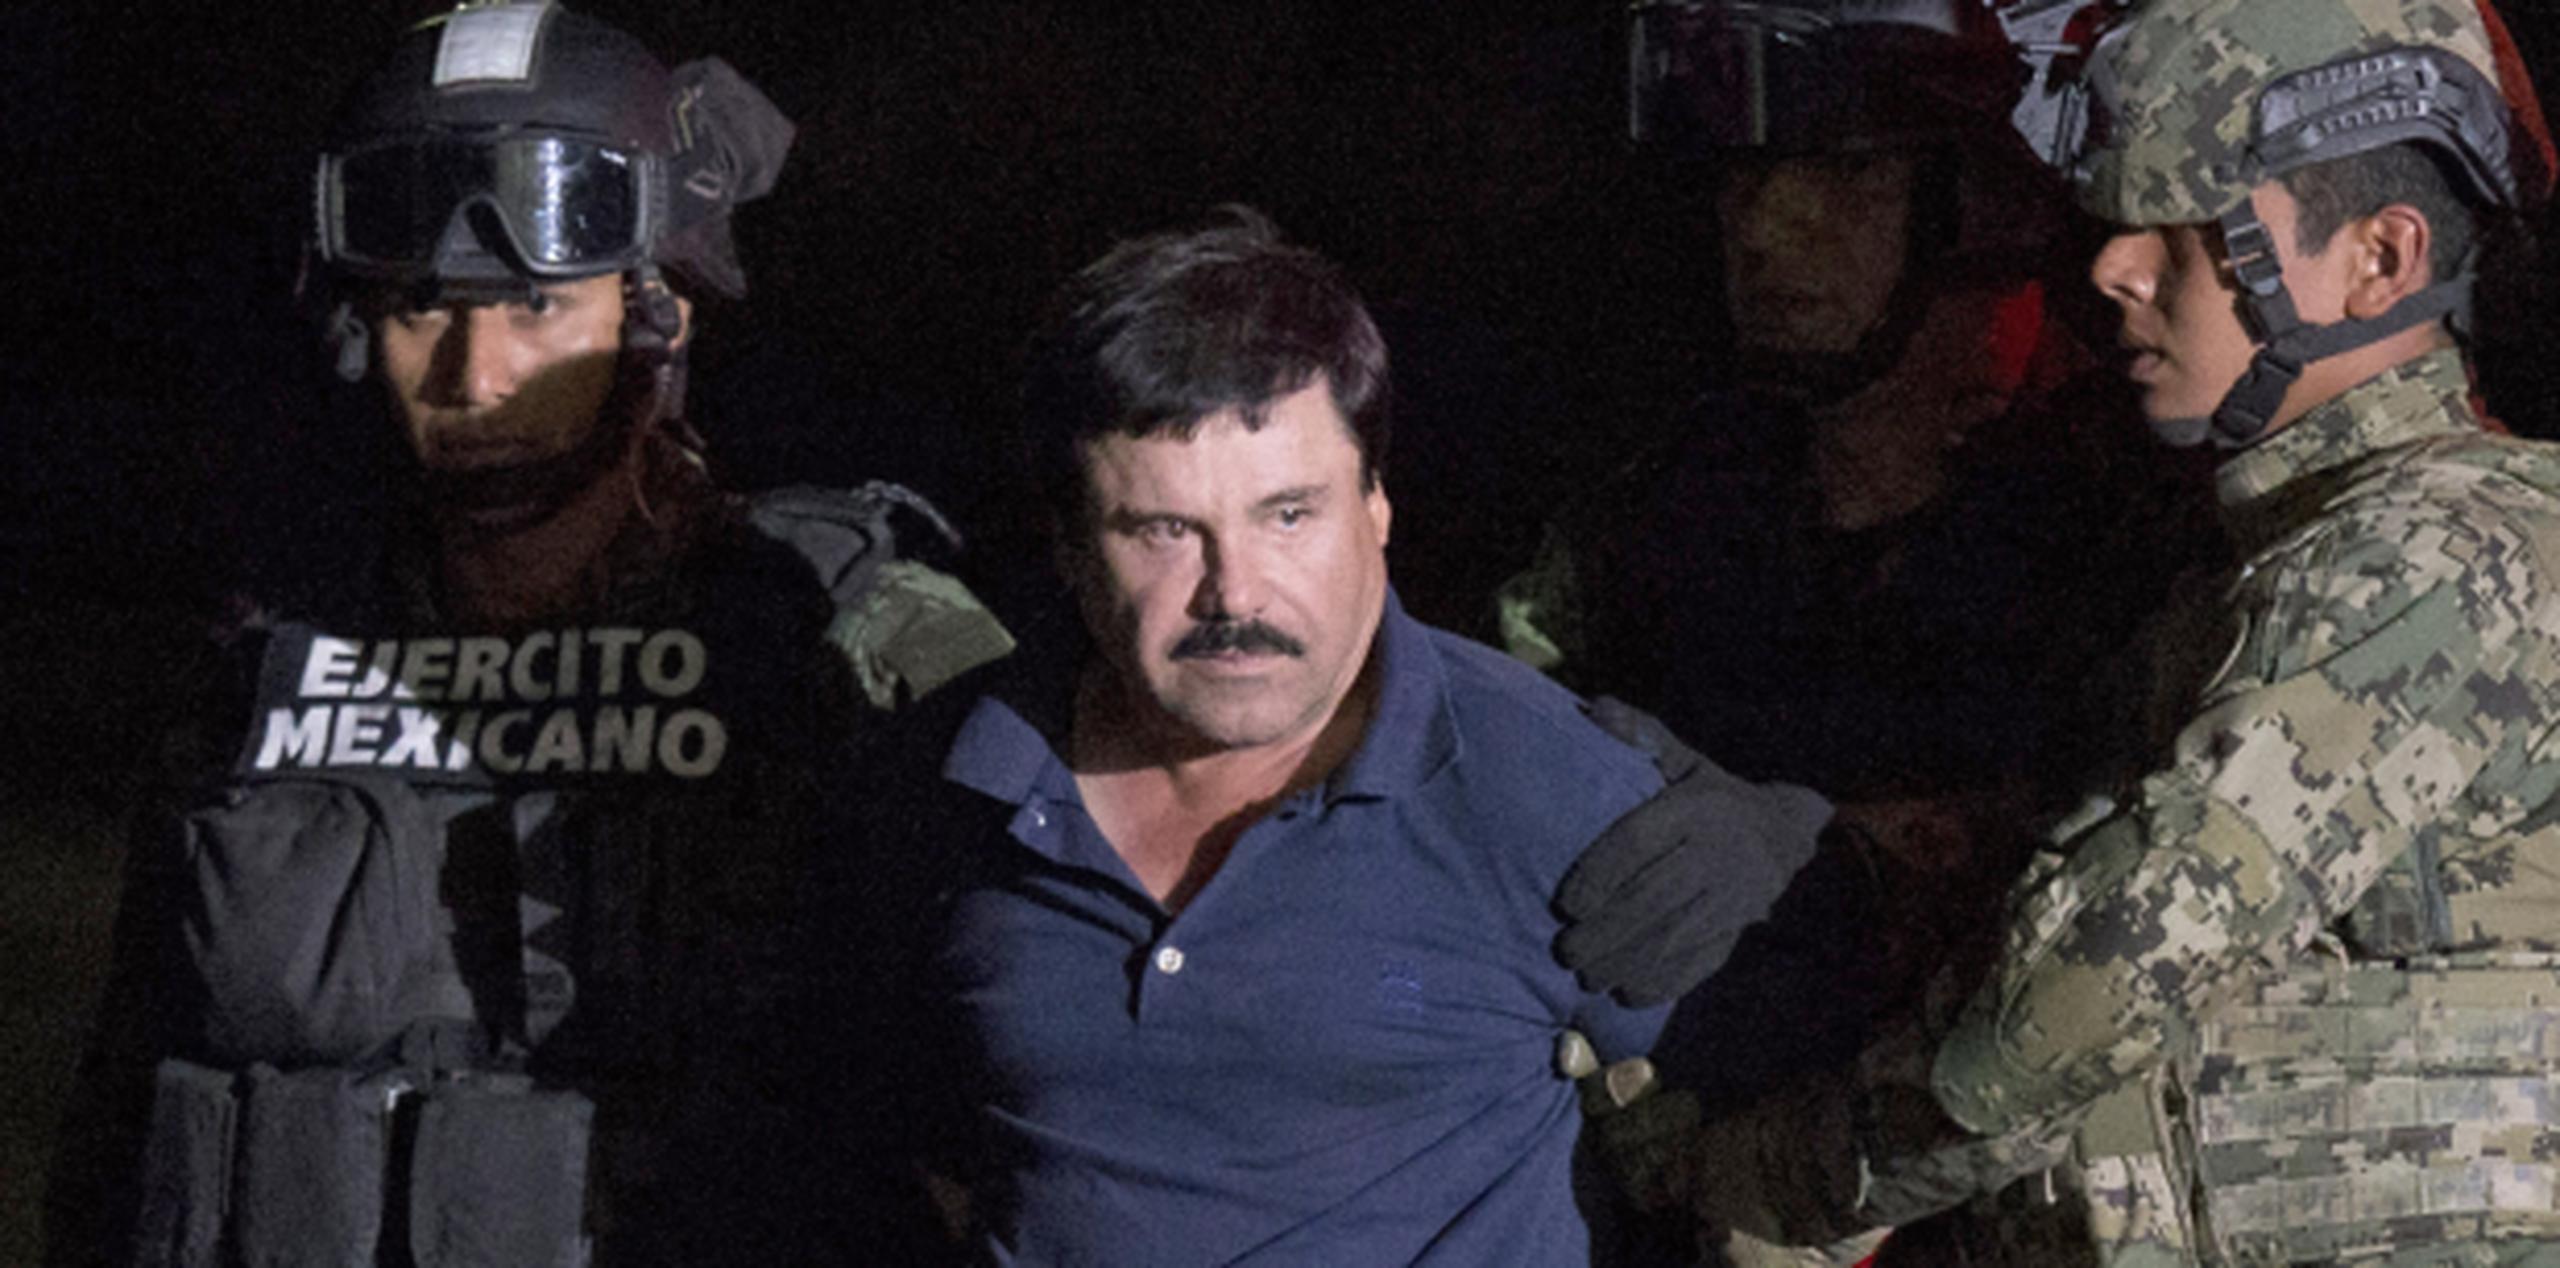 El propio Guzmán fue notificado de la decisión de México en el penal donde permanece recluido. (Prensa Asociada)